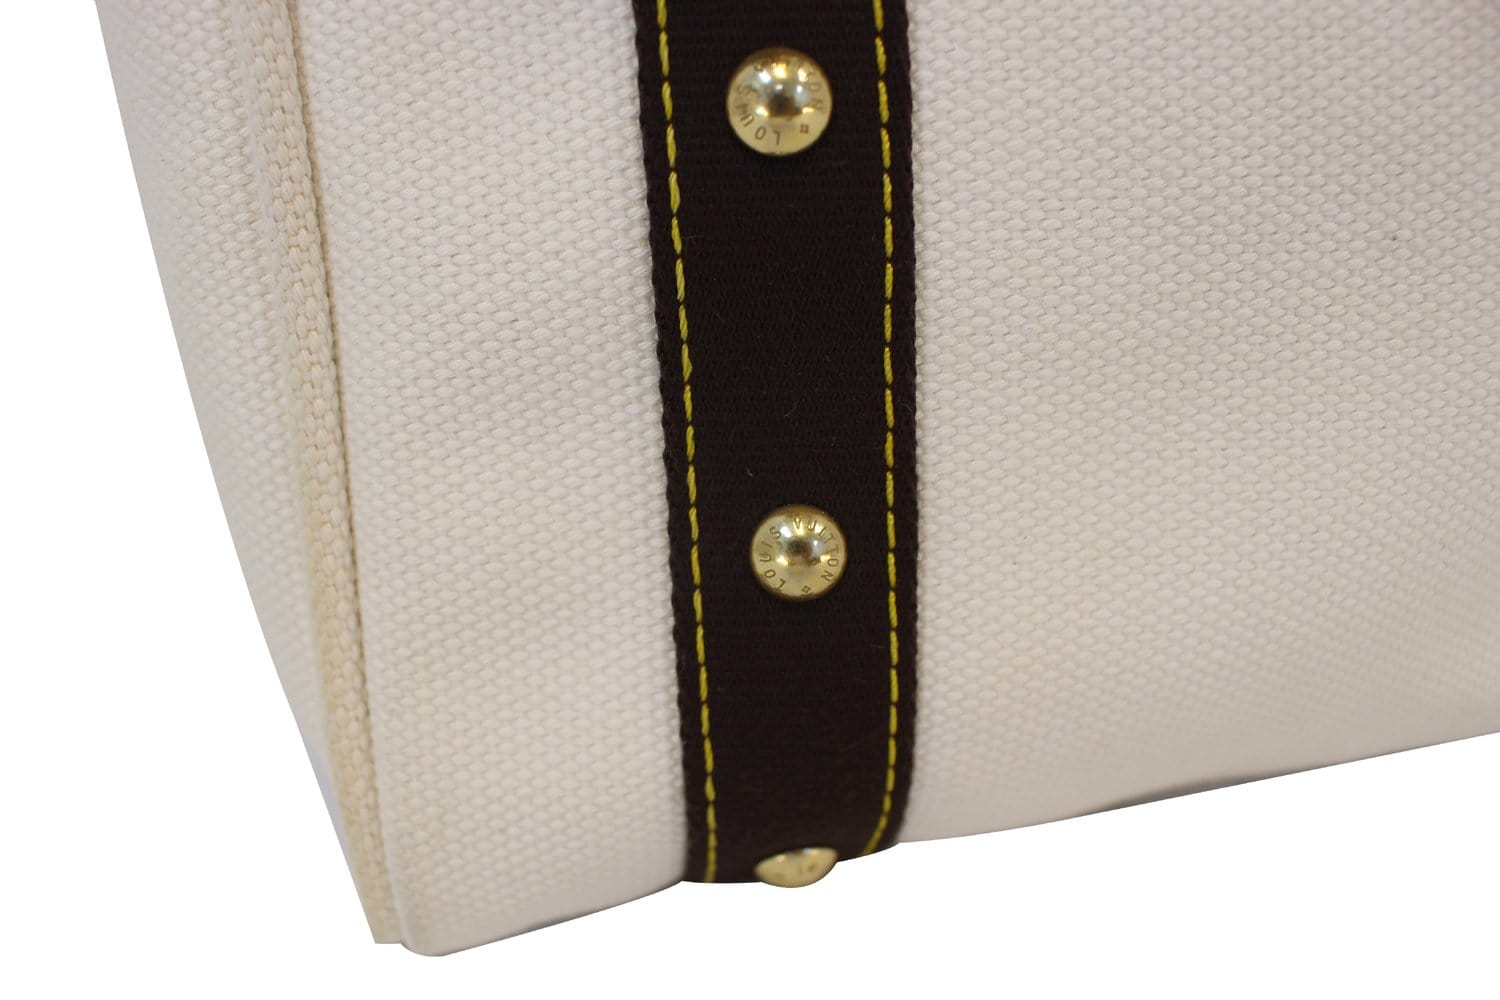 Louis Vuitton Antigua Handbag 338905